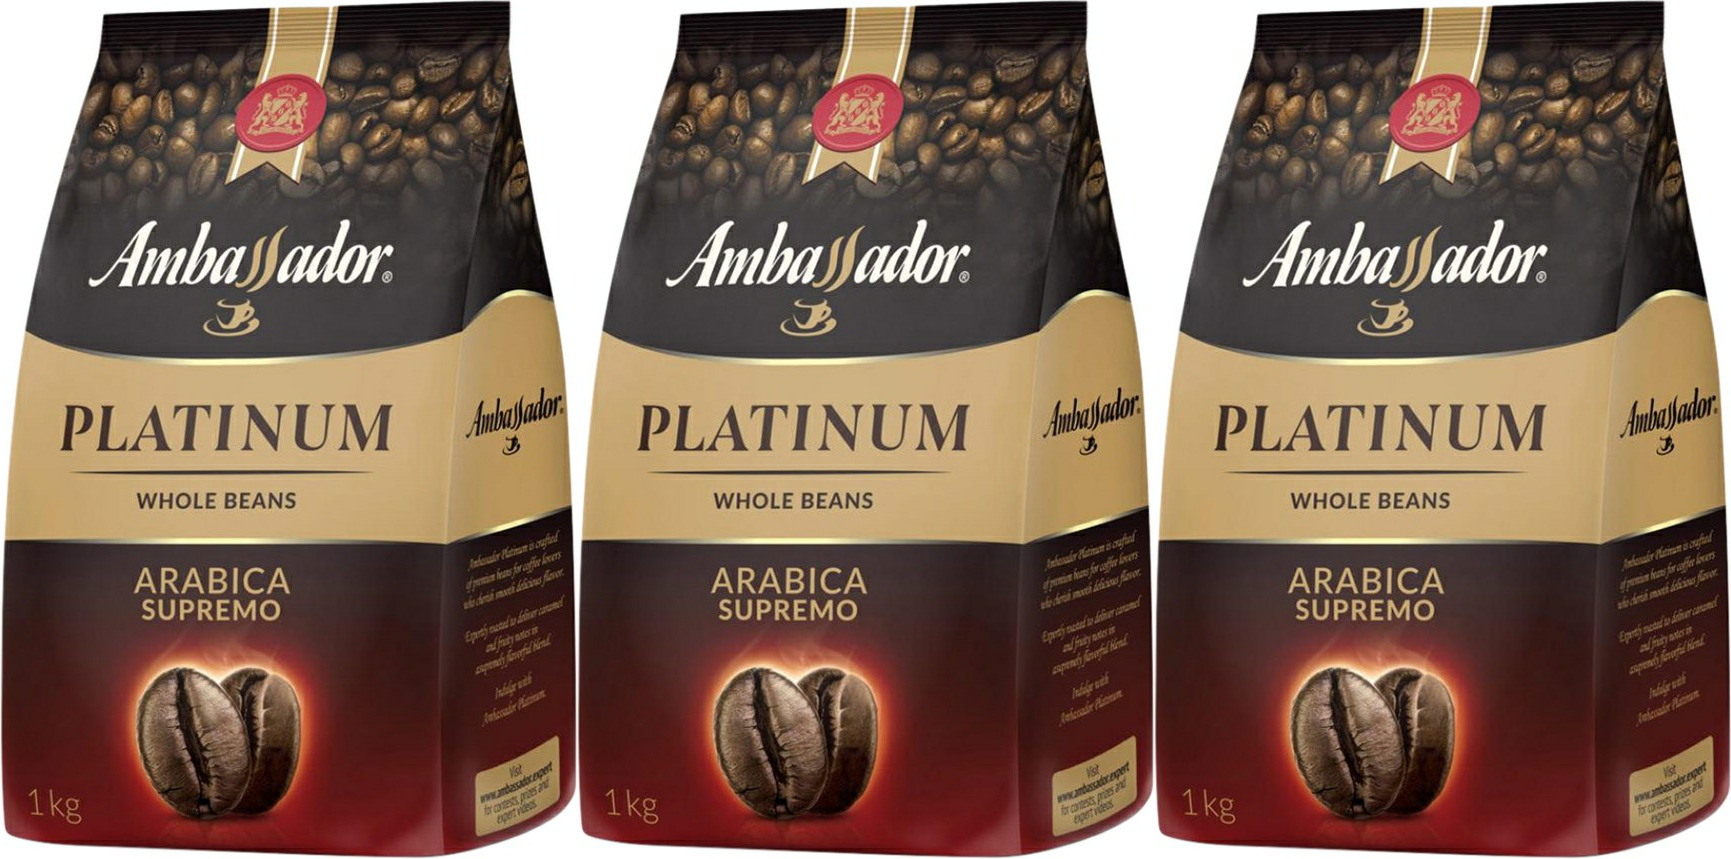 250г кофе Ambassador Platinum Arabica молотый пакет. Кофе в зернах Ambassador Platinum. Кофе Амбассадор в зернах 1 кг. Амбассадор платинум крема. Кофе амбассадор платинум 190